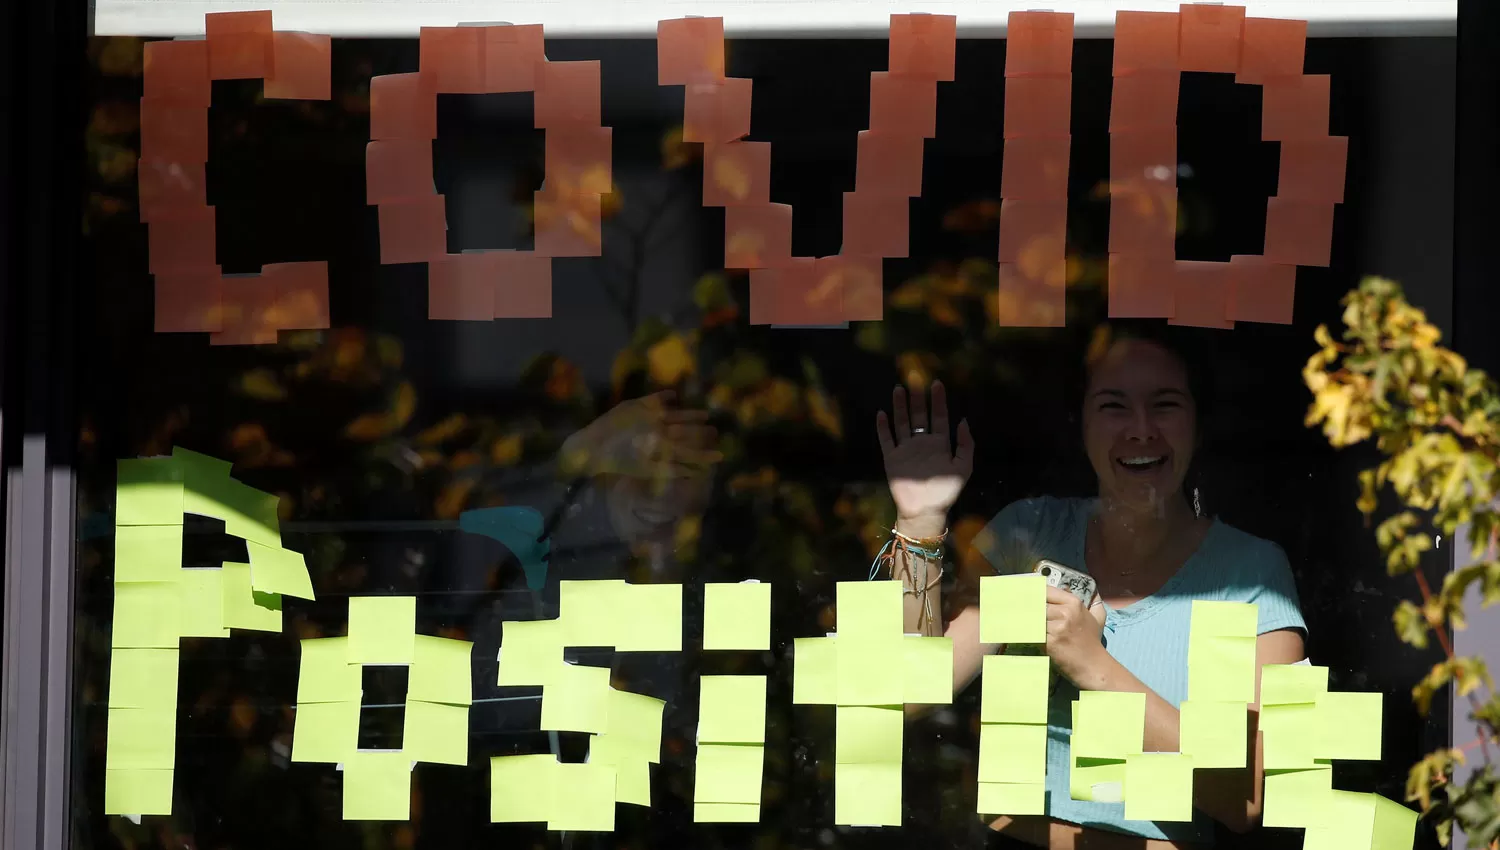 EN MANCHESTER. Una mujer saluda detrás de un cartel de covid positivo instalado en las ventanas de una residencia para estudiantes.